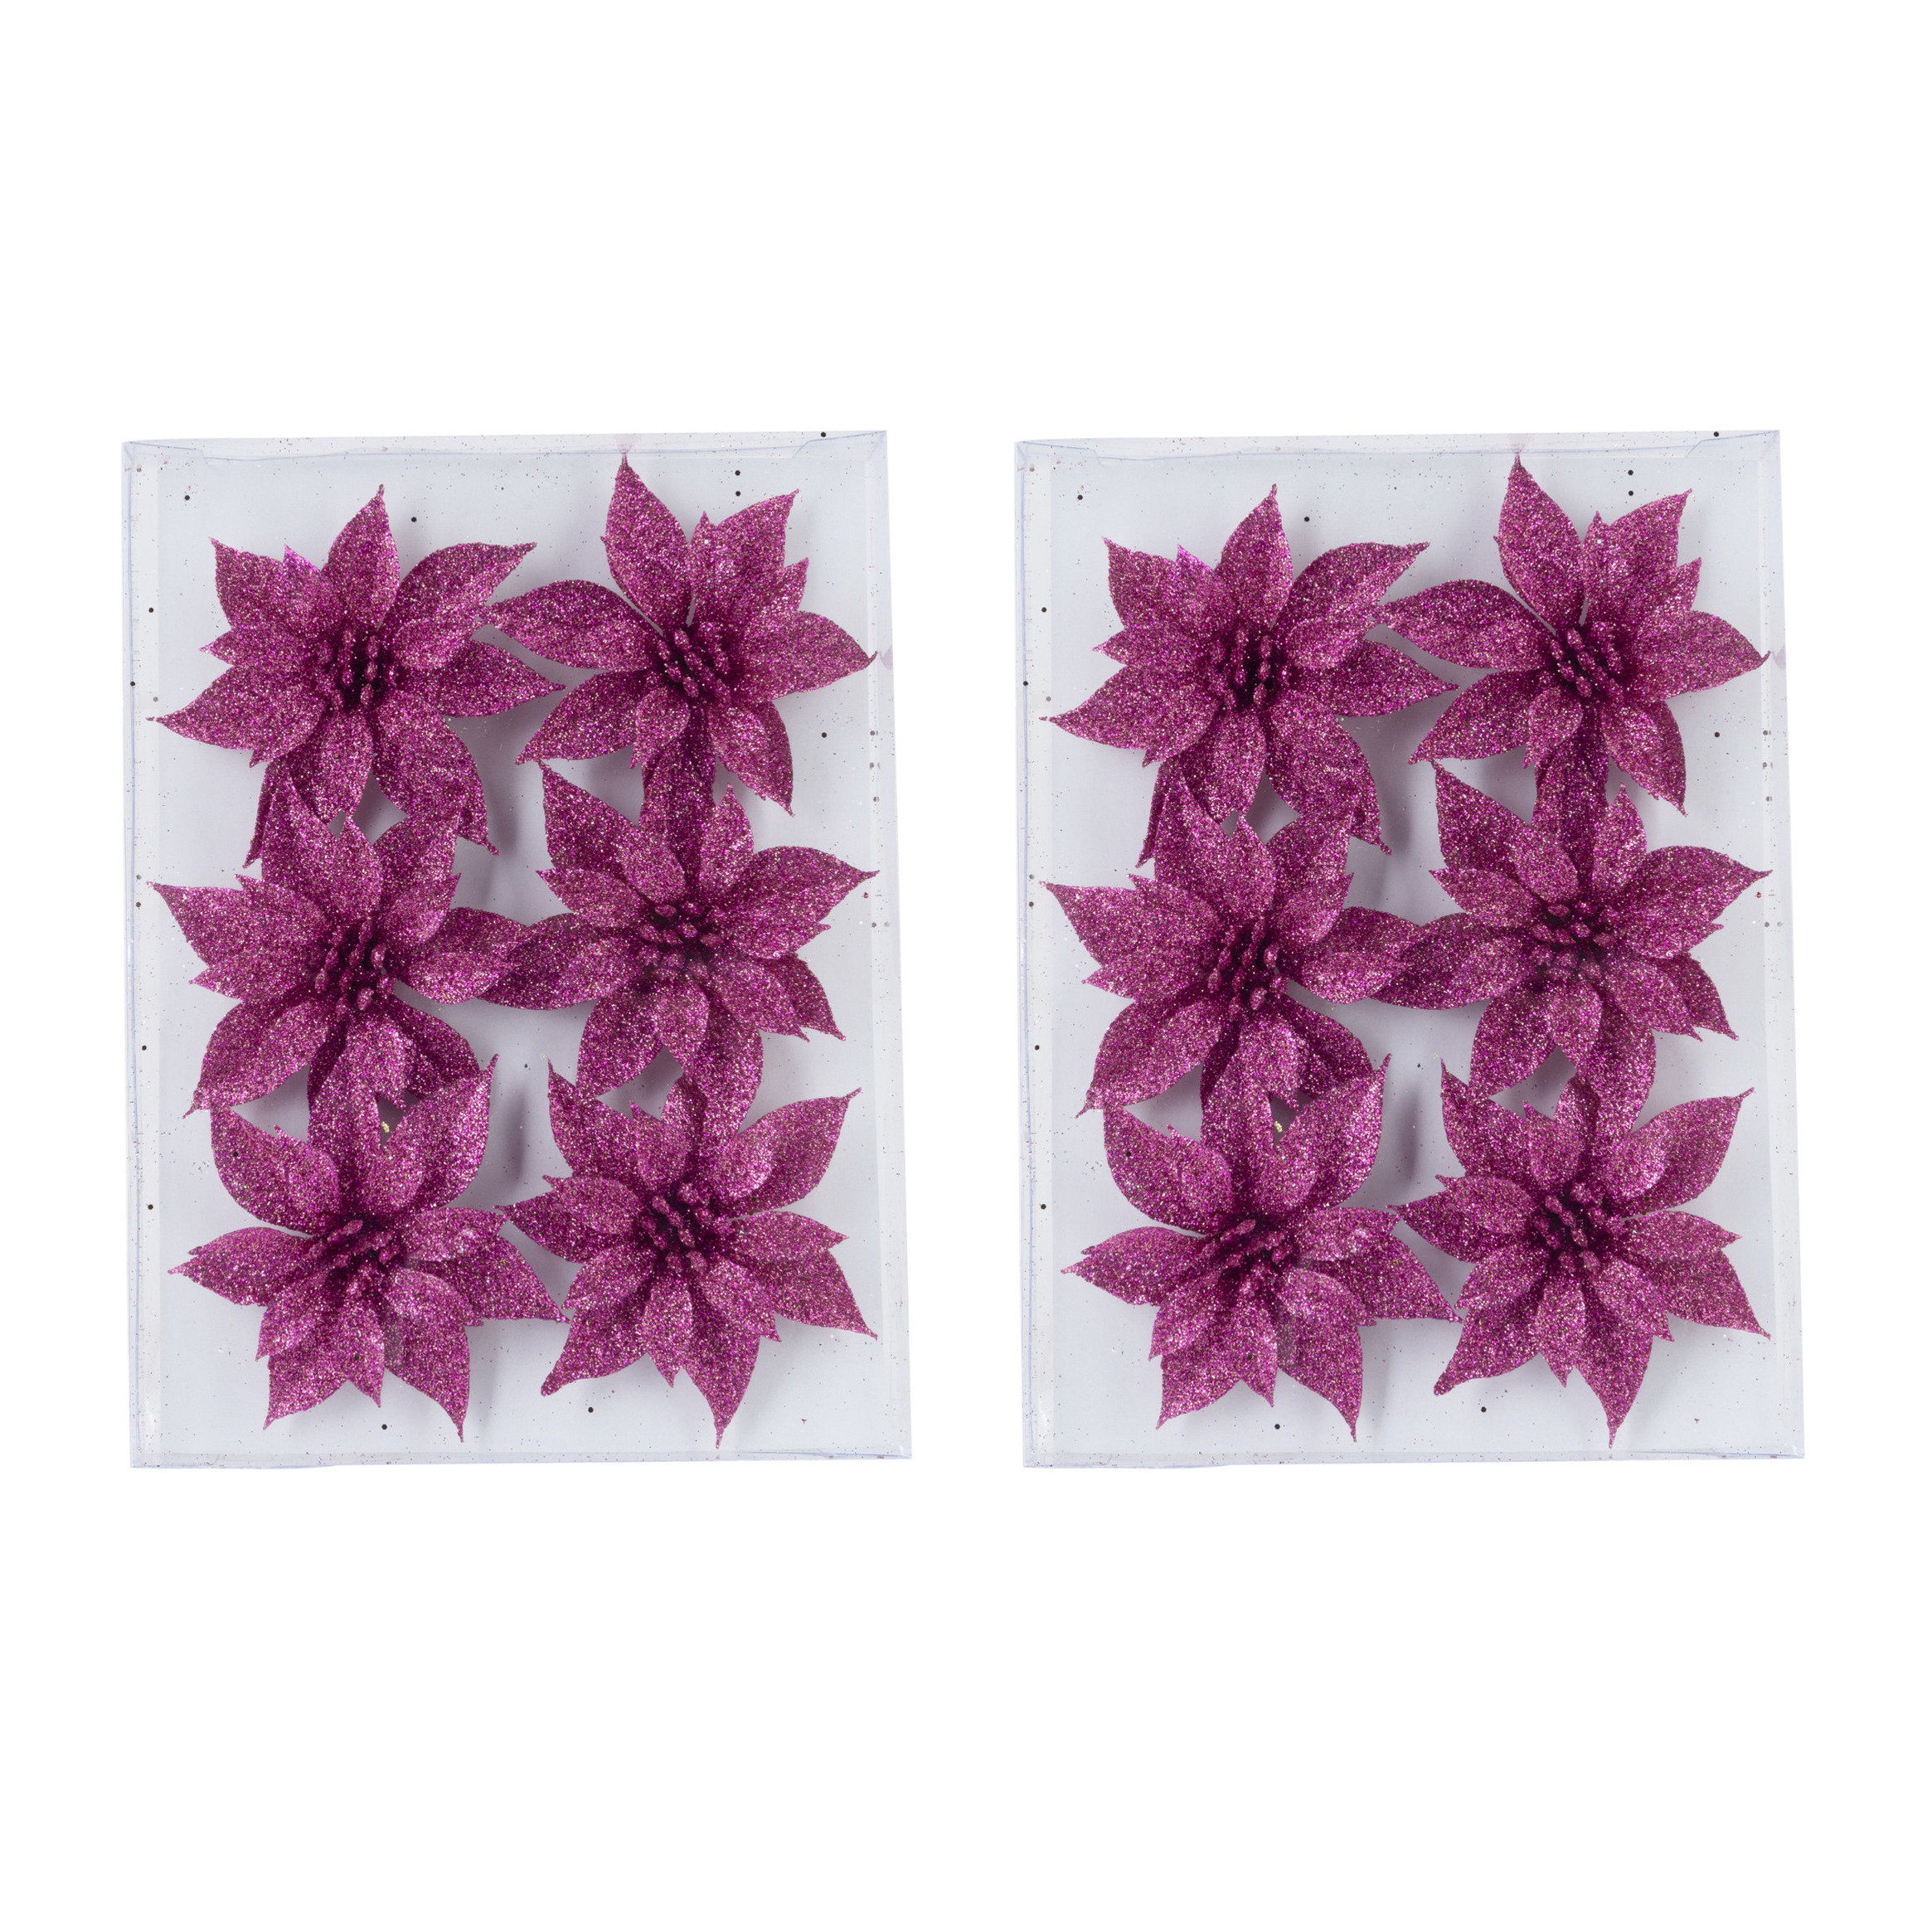 18x stuks decoratie bloemen rozen fuchsia roze glitter op ijzerdraad 8 cm